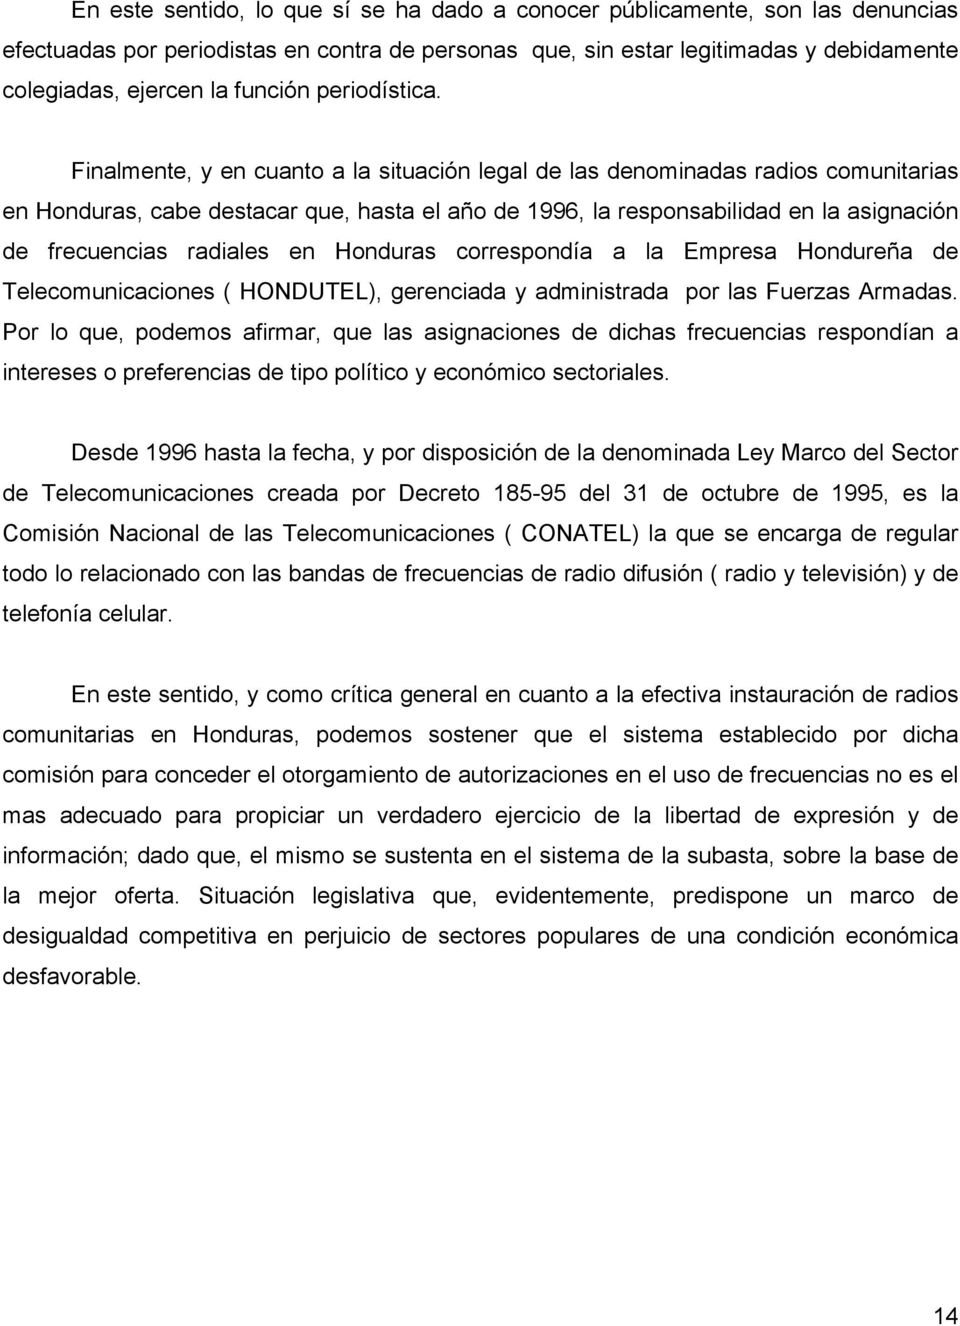 Finalmente, y en cuanto a la situación legal de las denominadas radios comunitarias en Honduras, cabe destacar que, hasta el año de 1996, la responsabilidad en la asignación de frecuencias radiales